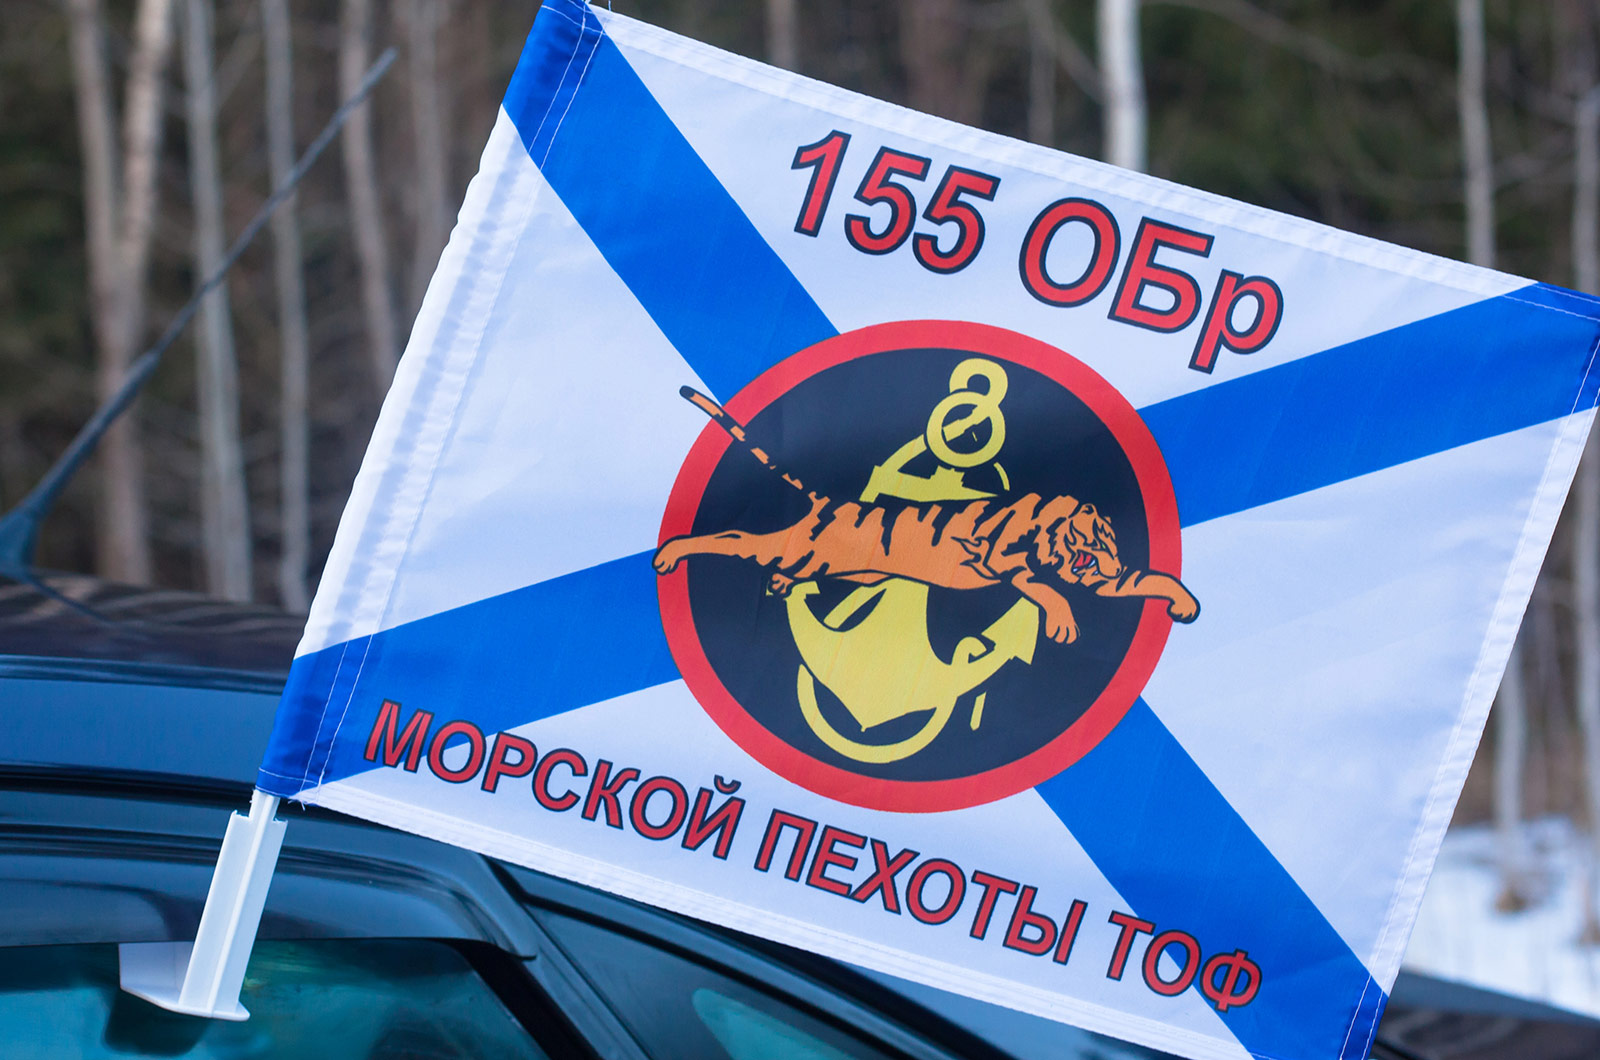 Флаг на машину «155 ОБр Морской пехоты ТОФ»